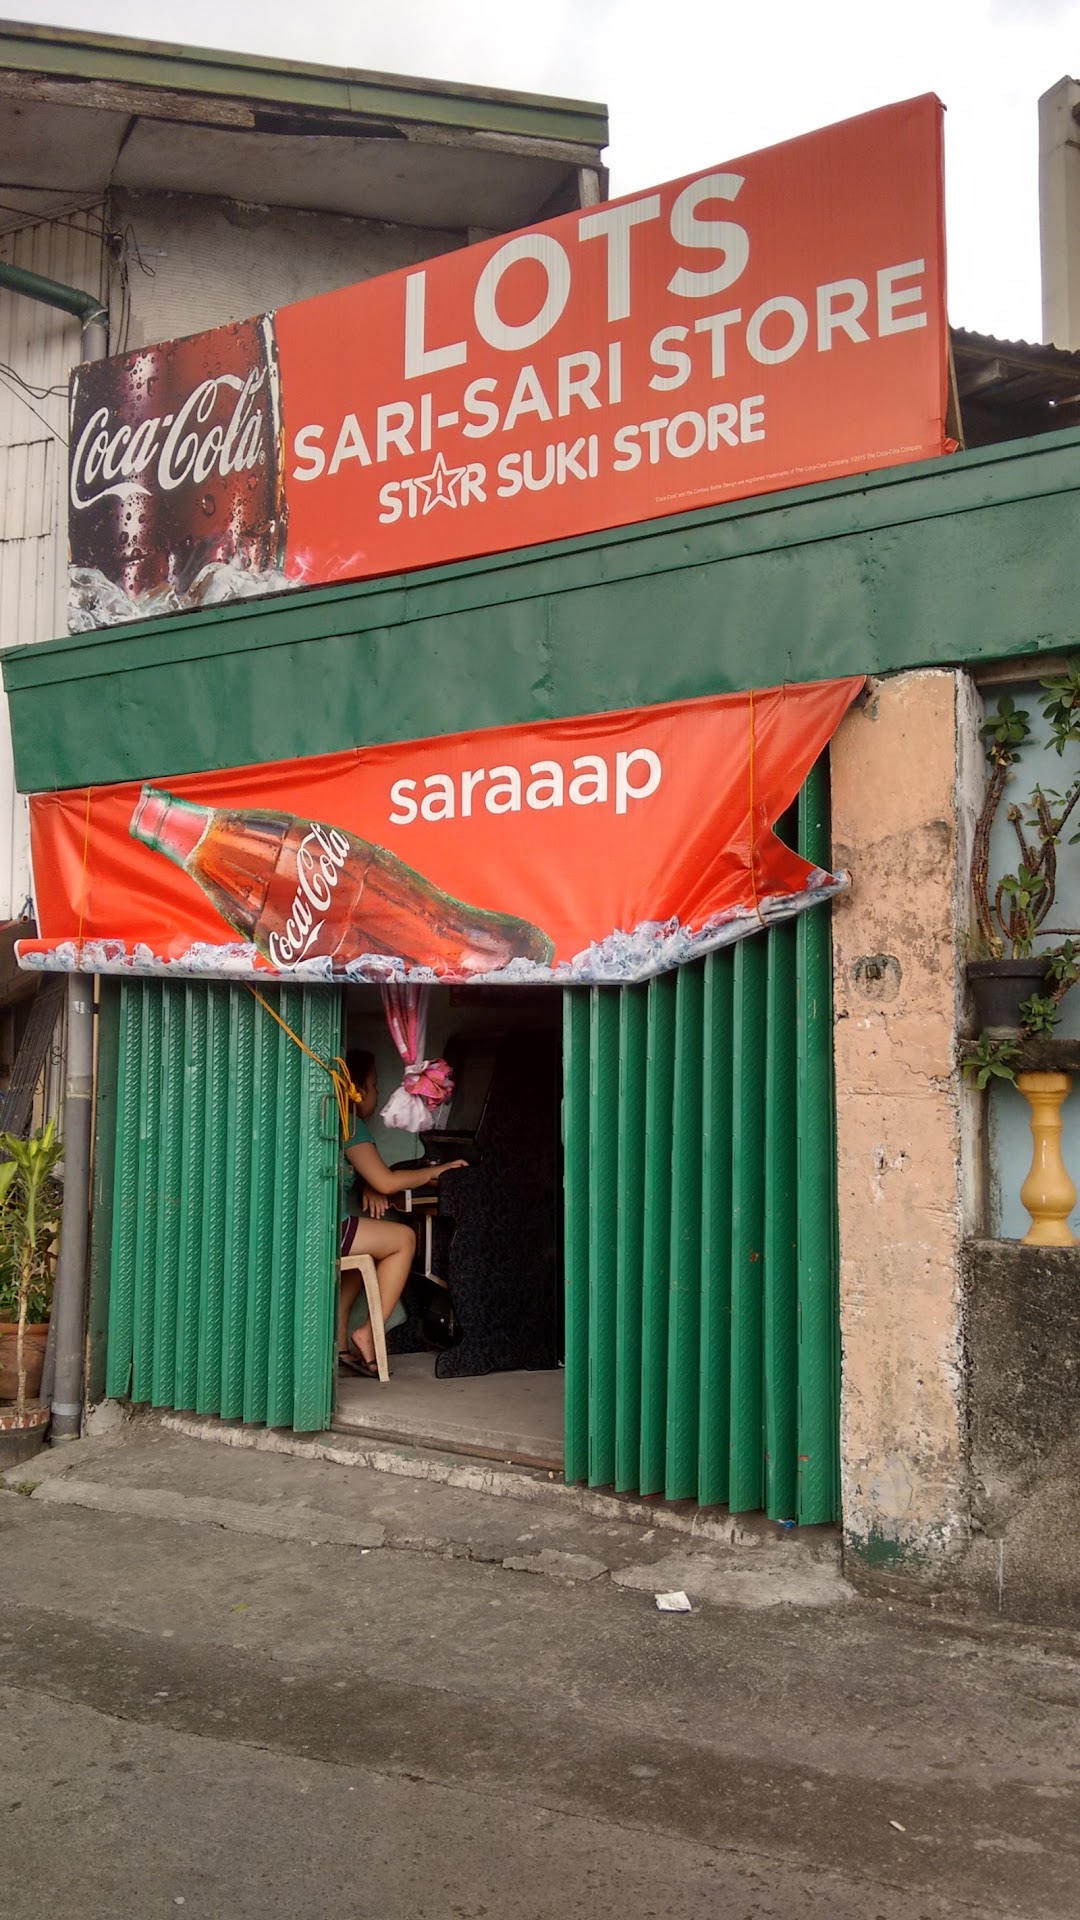 Lots Sari-Sari Store